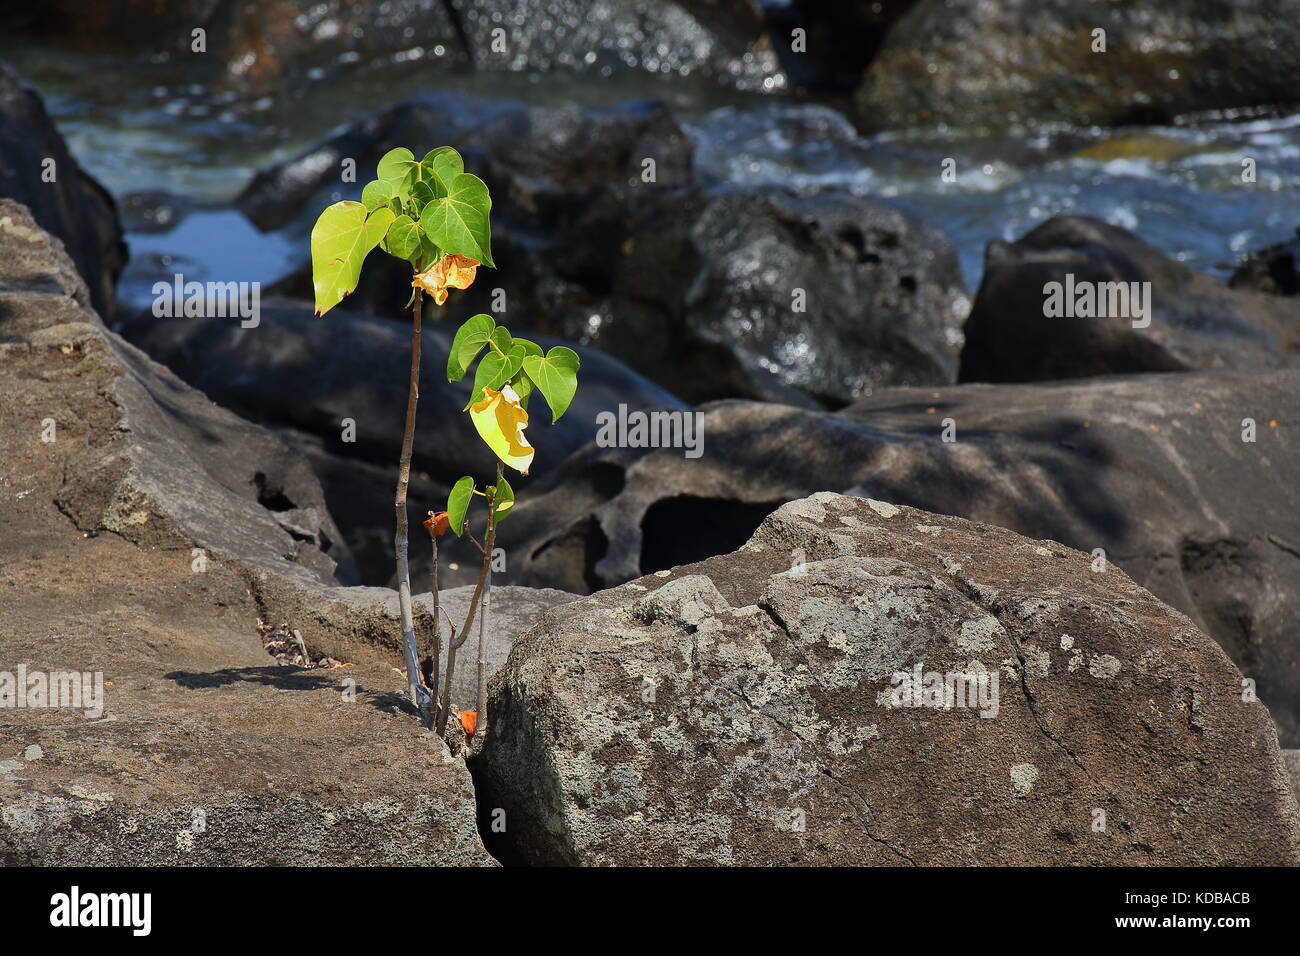 Kleine grüne Pflanze überlebt in einer feindlichen Umgebung wächst auf kargen Felsen am Meer im Querformat. Stockfoto